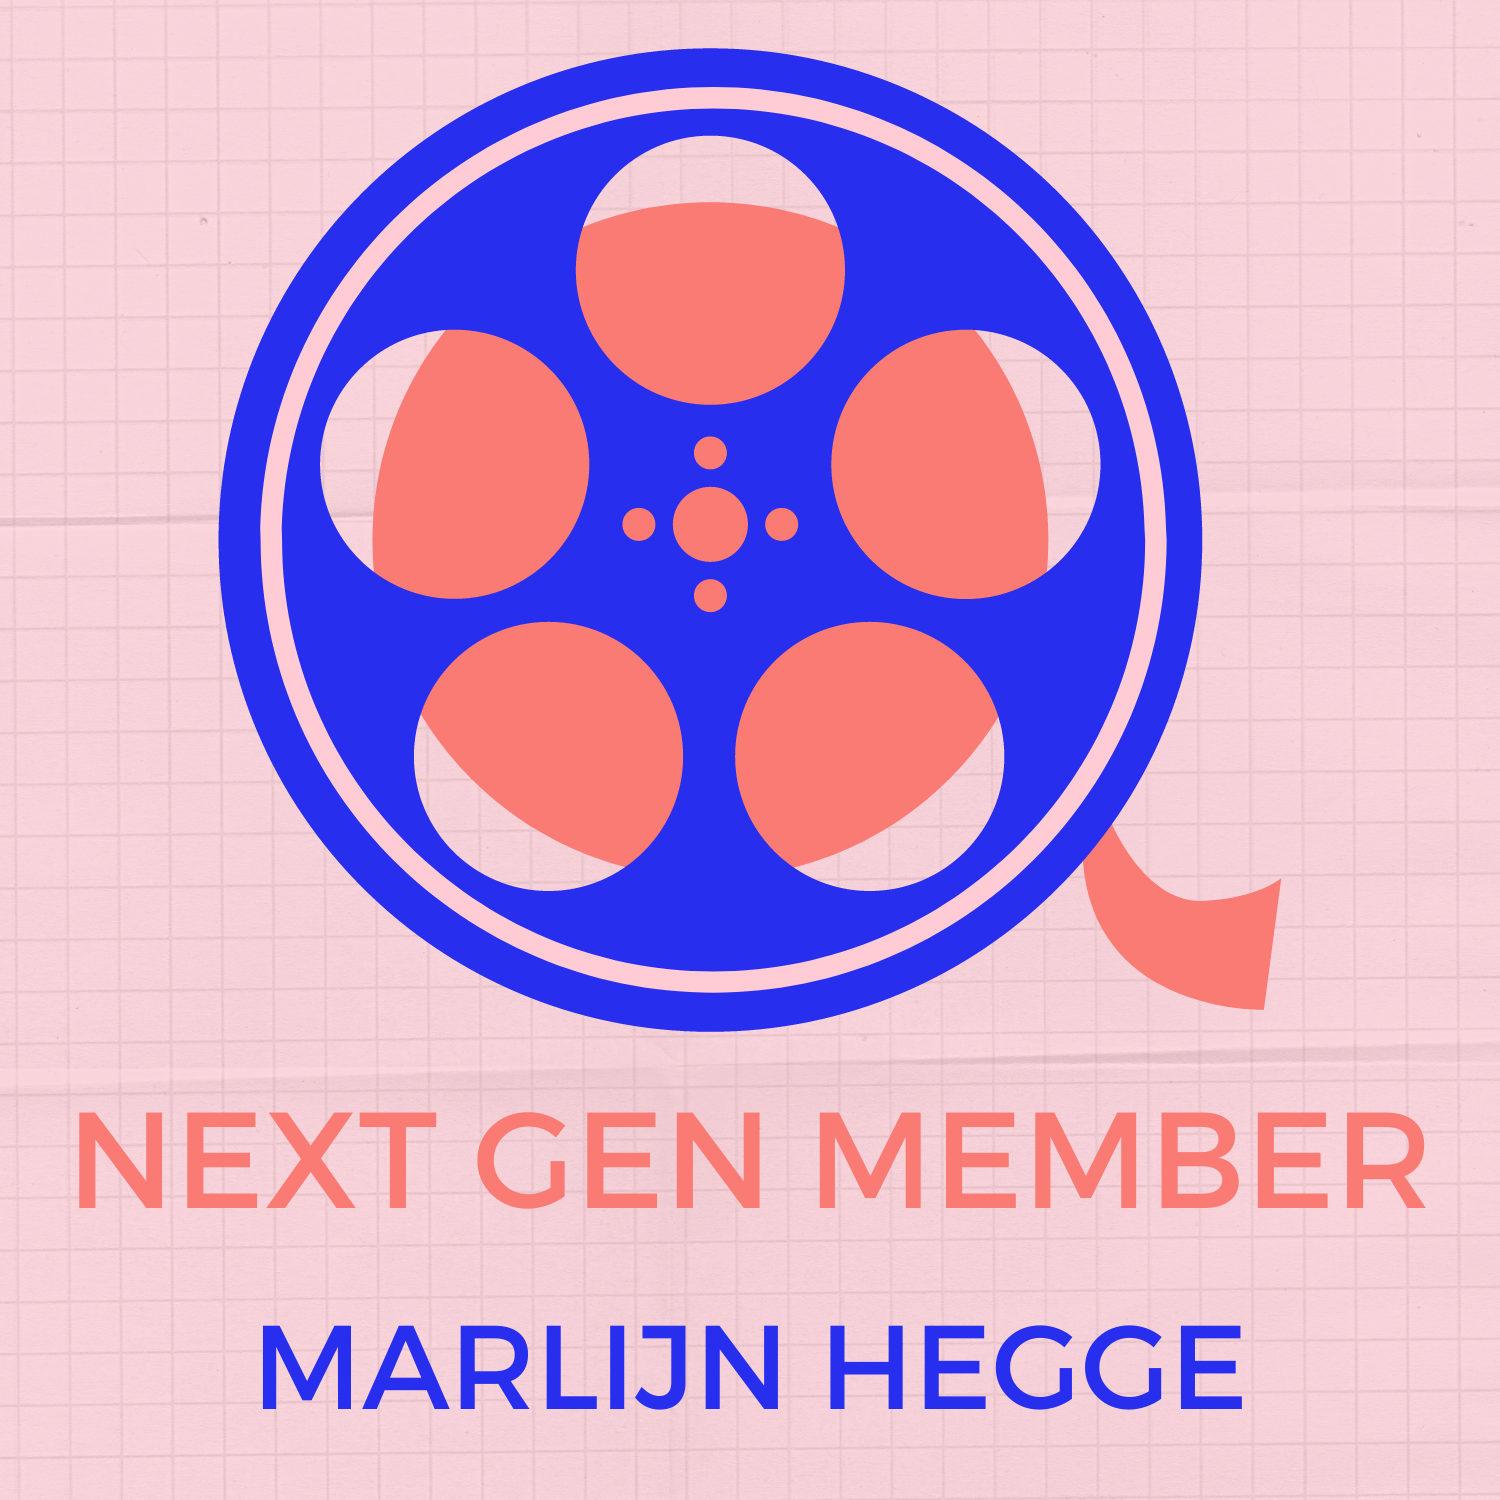 Next Gen Member: Marlijn Hegge